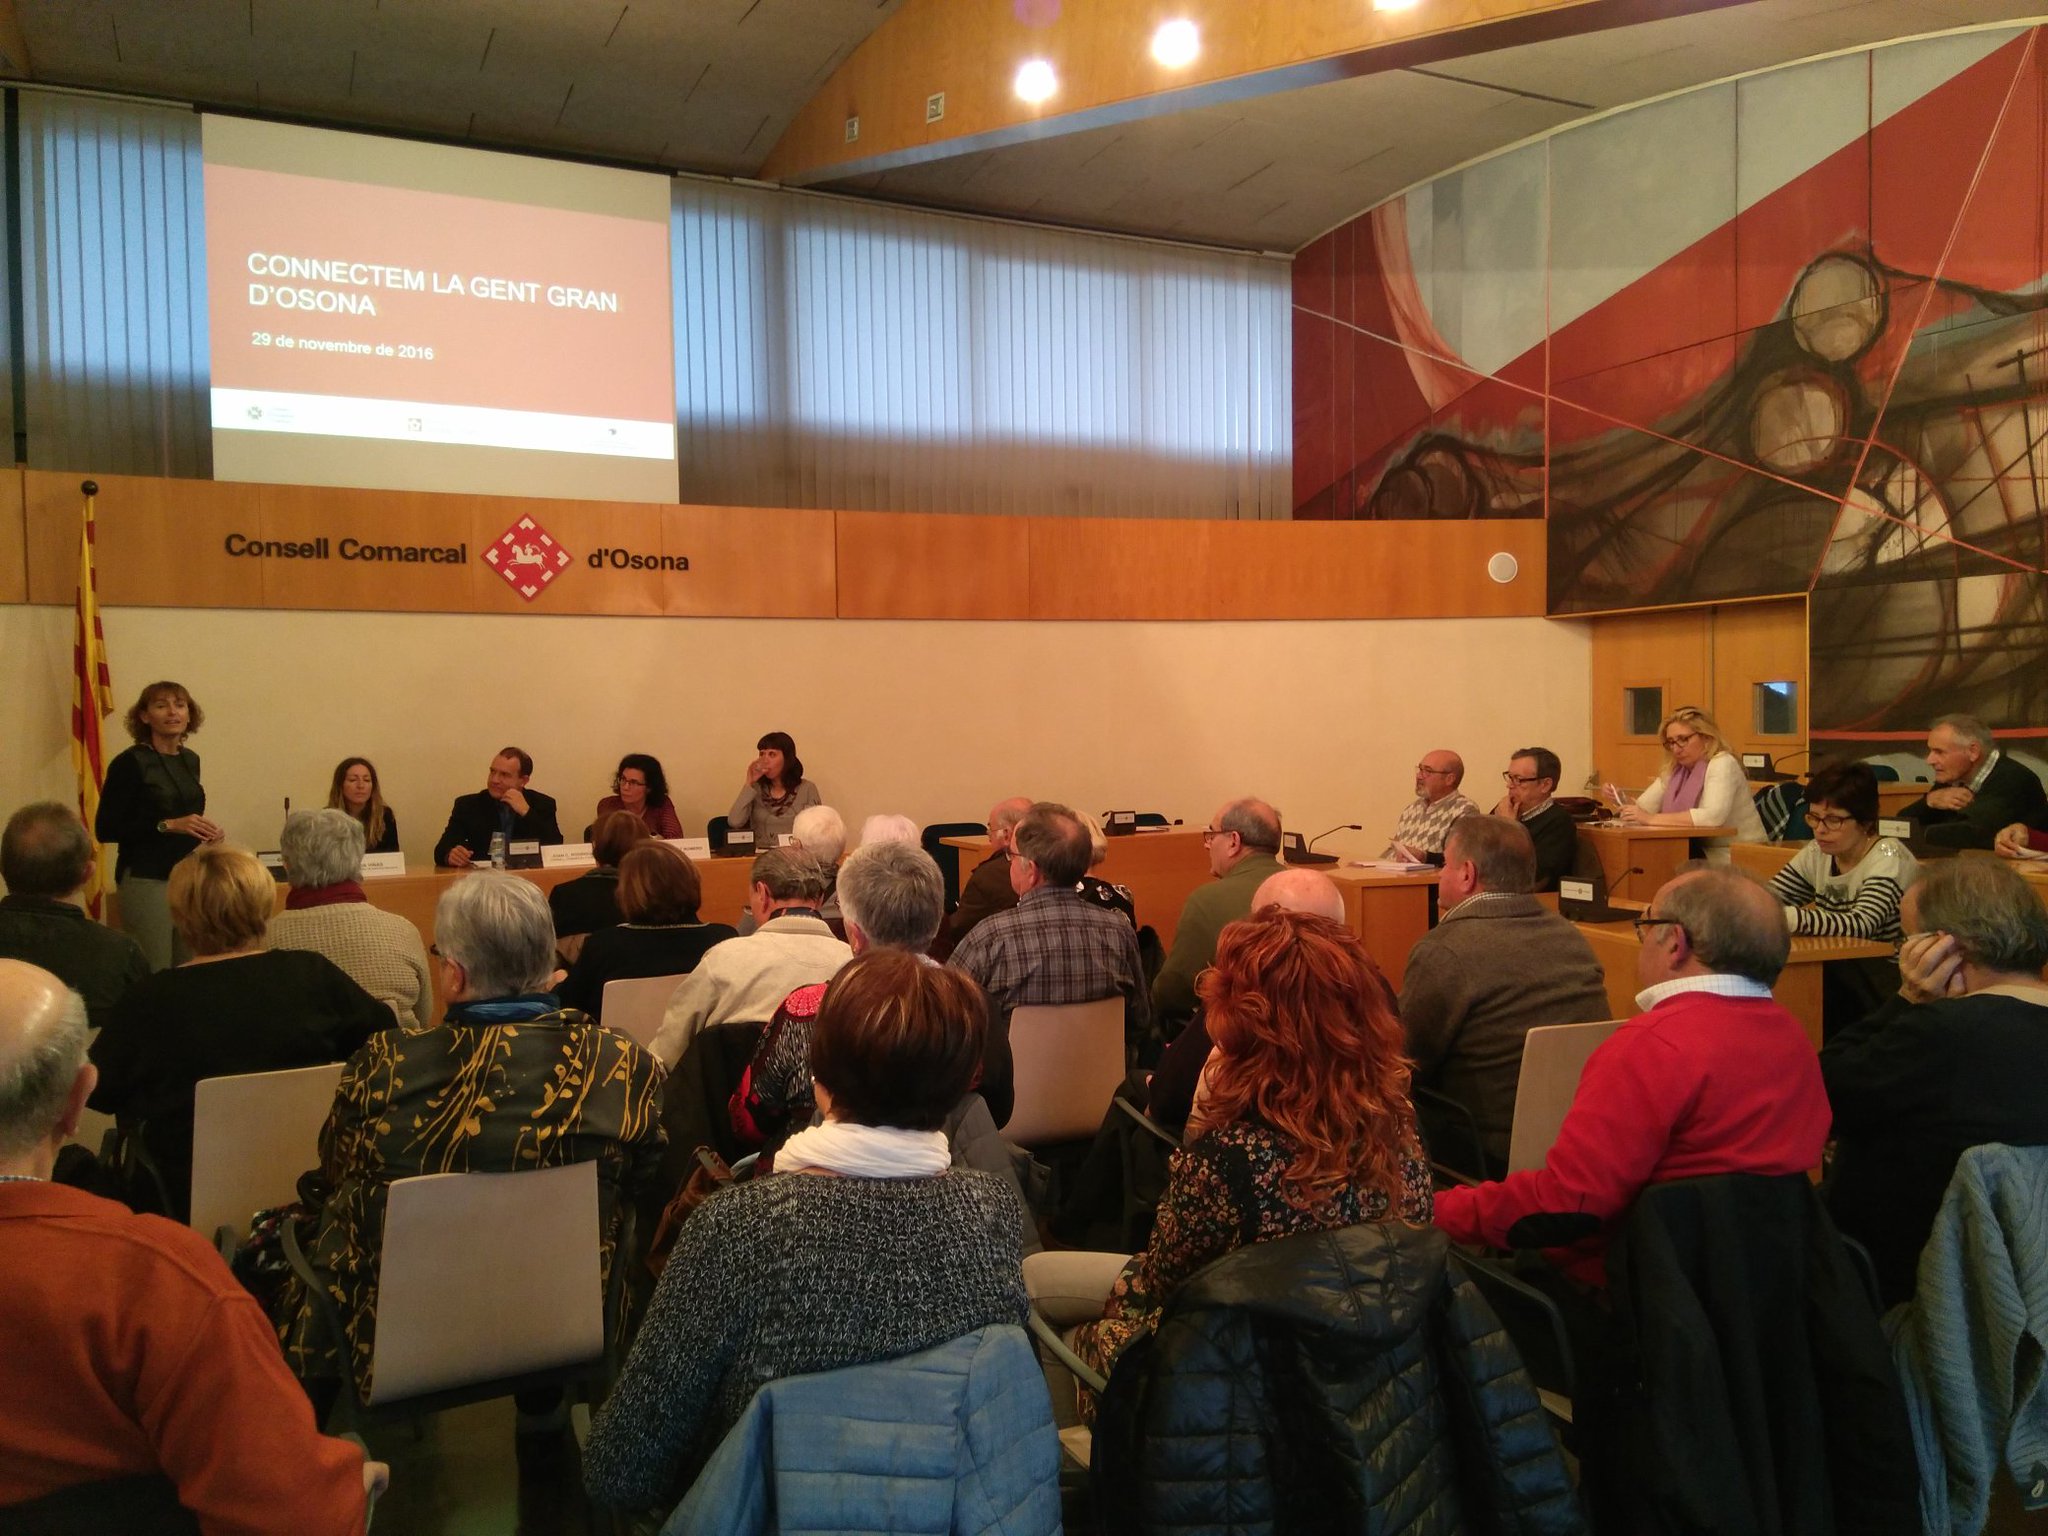 L'acte de presentació es va fer al consell comarcal d'Osona